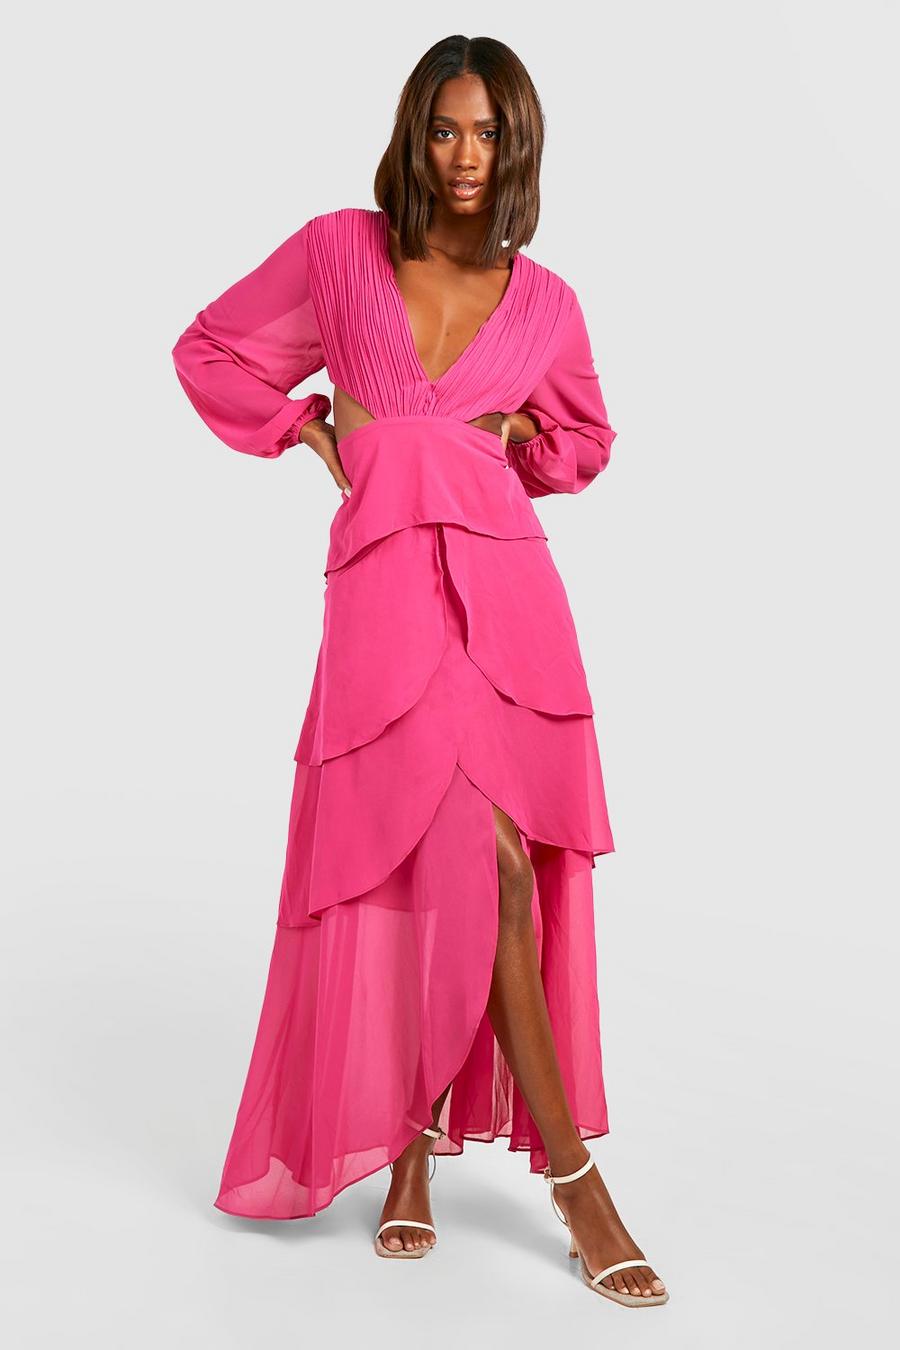 Bright pink Chiffon Ruffle Cut Out Maxi Dress